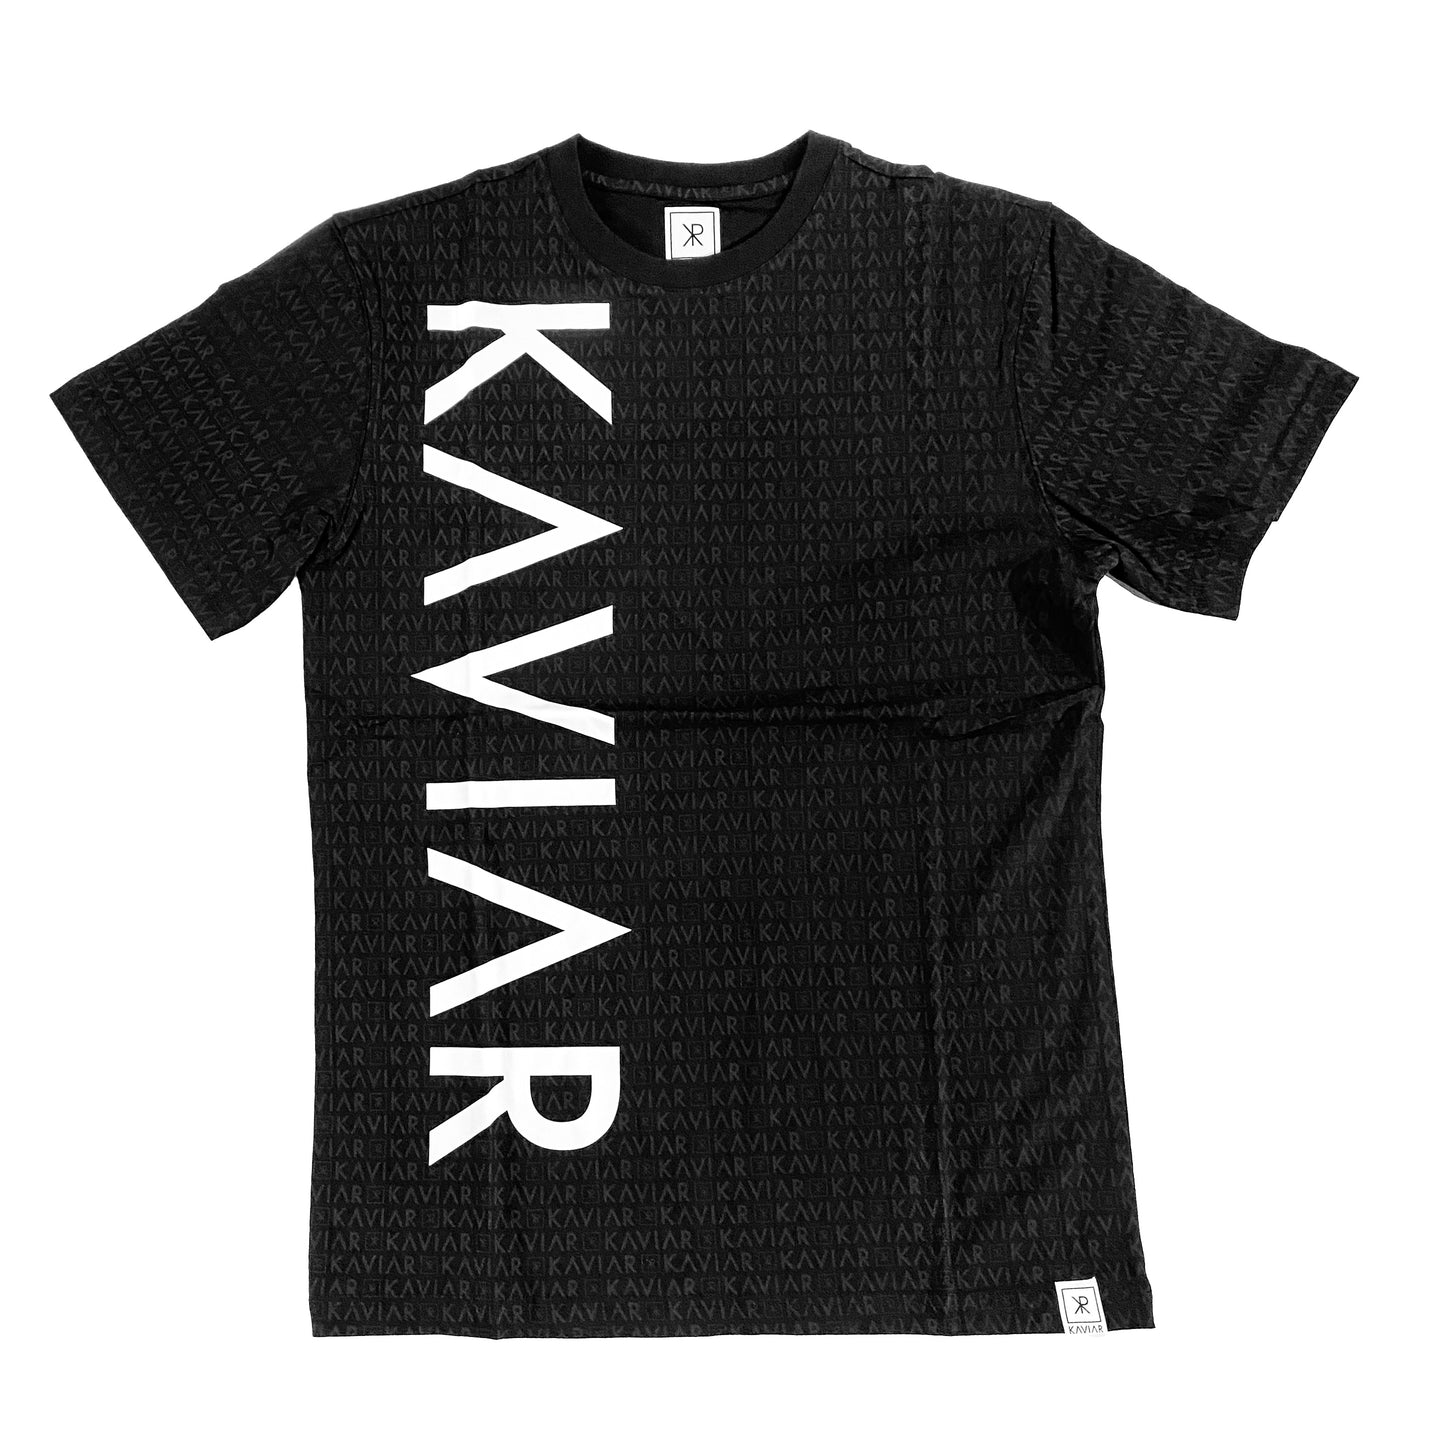 Kaviar - Men's Black Crewneck Shirt